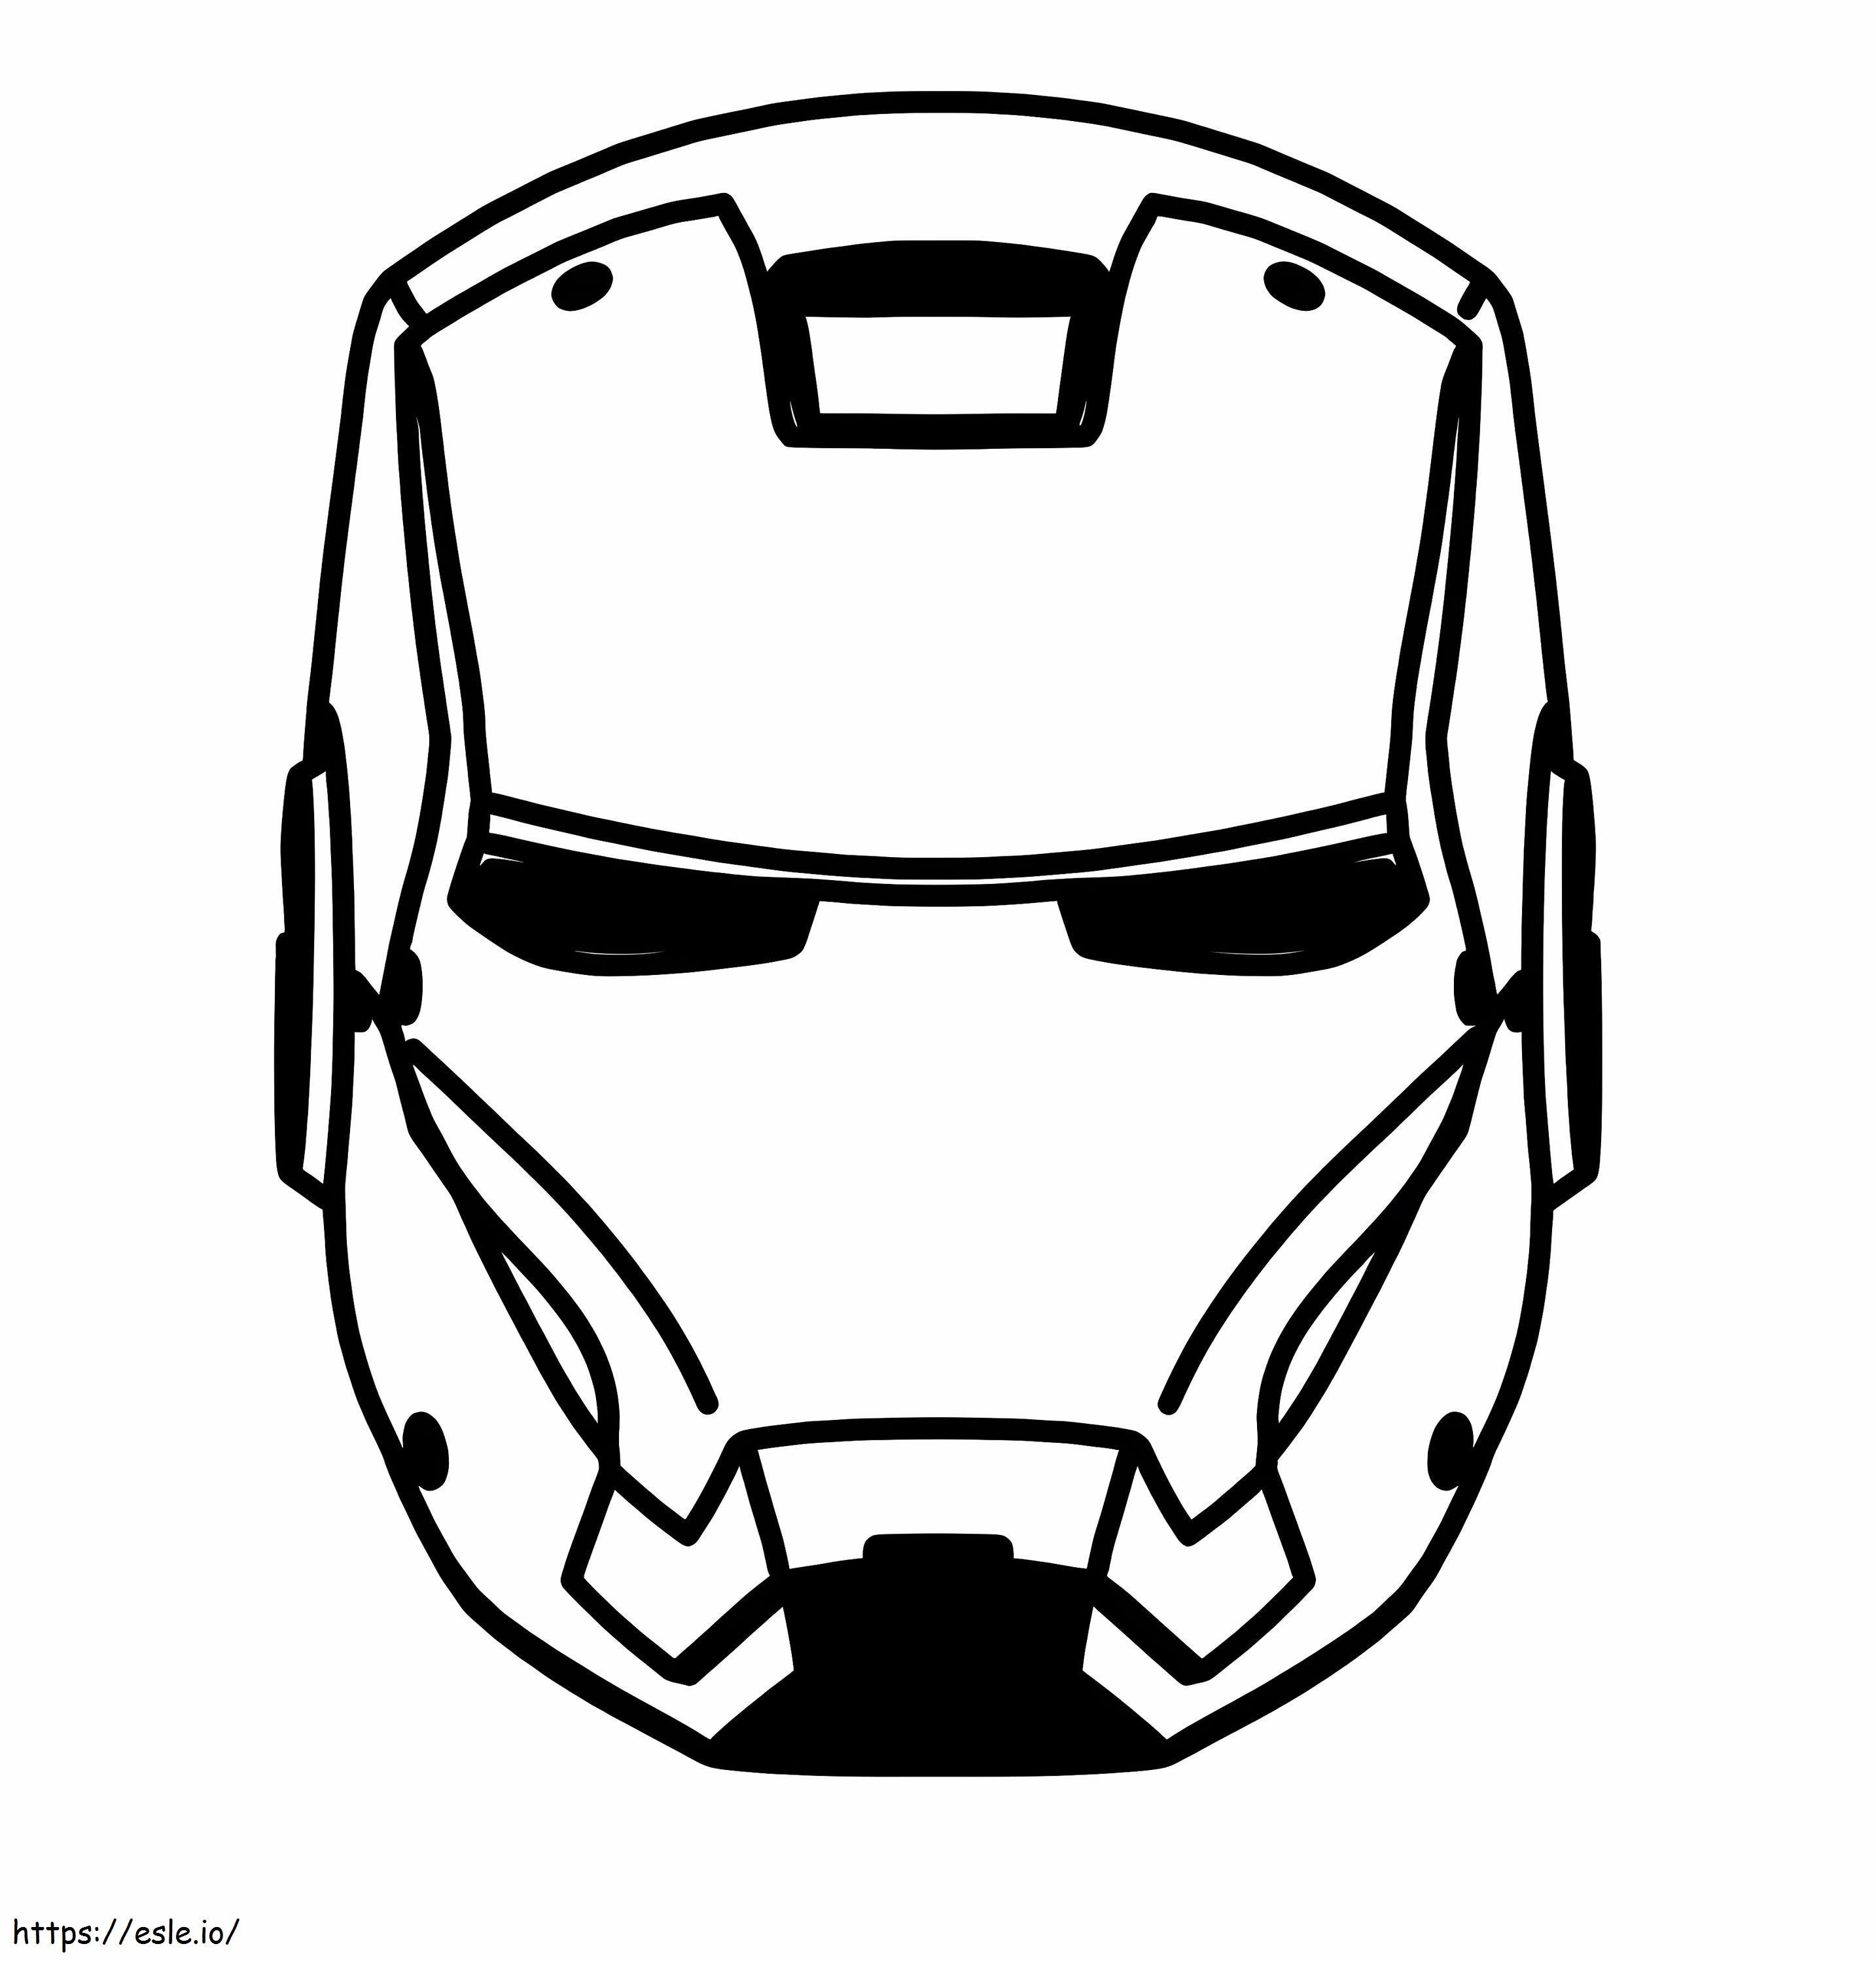 Desenho de máscara do Ironman para colorir